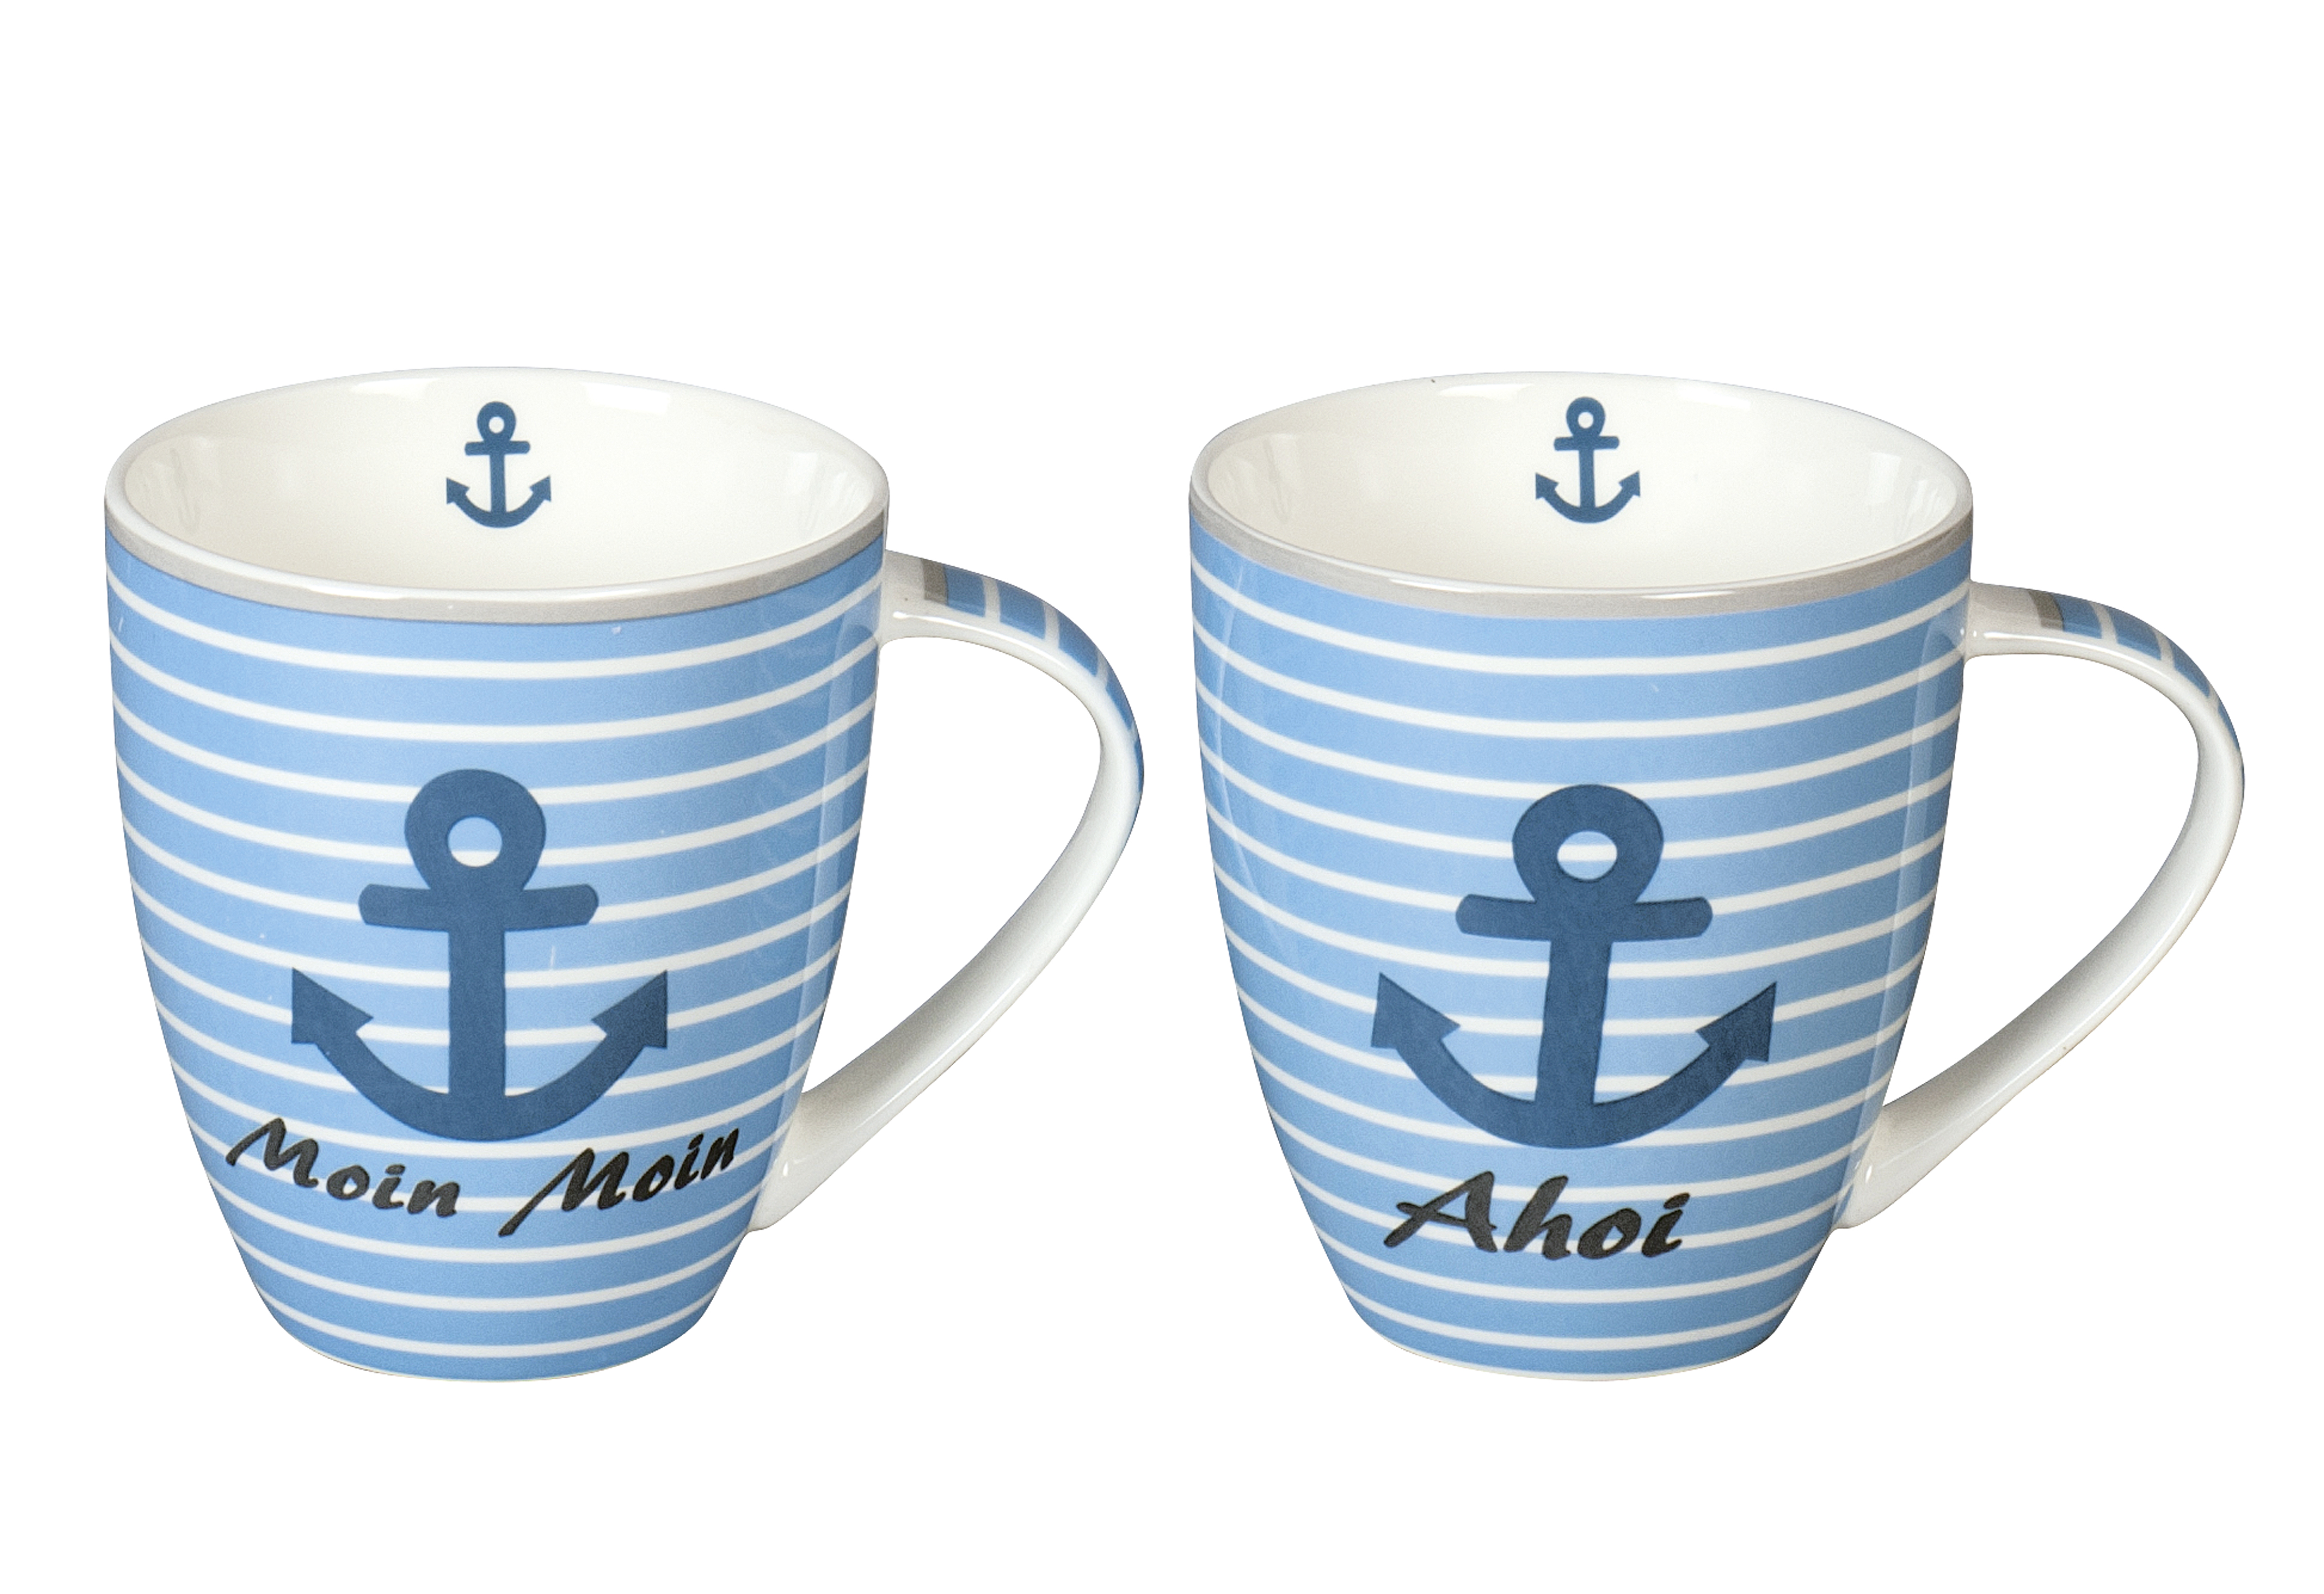 Kaffeebecher Maritim Moin Moin/Ahoi sortiert 300 ml blau/weiß